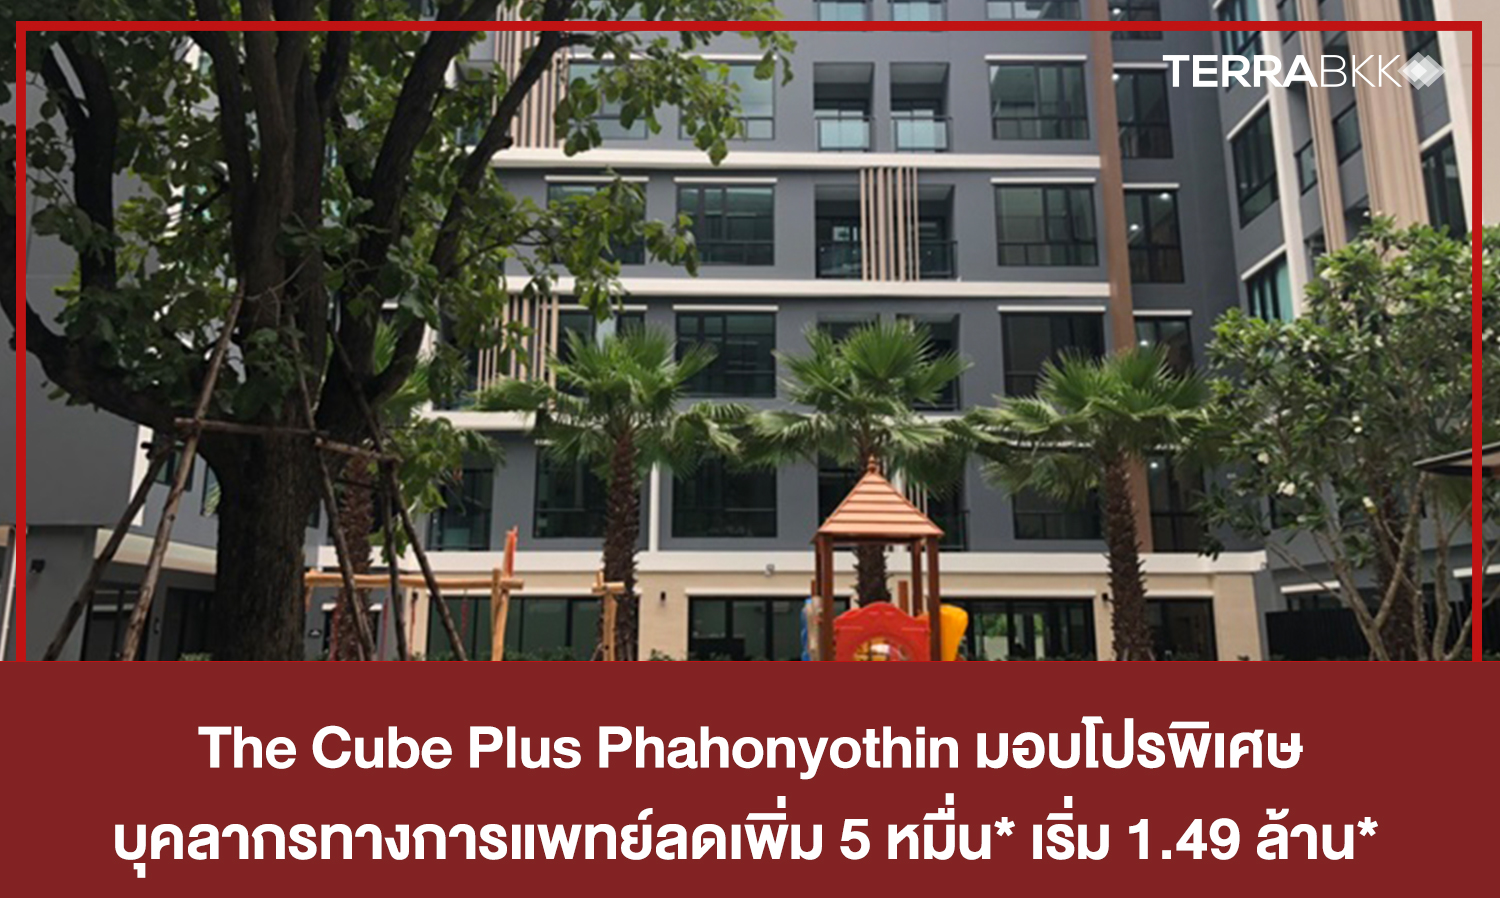 The Cube Plus Phahonyothin มอบโปรพิเศษ บุคลากรทางการแพทย์ลดเพิ่ม 5 หมื่น* เริ่ม 1.49 ล้าน* 